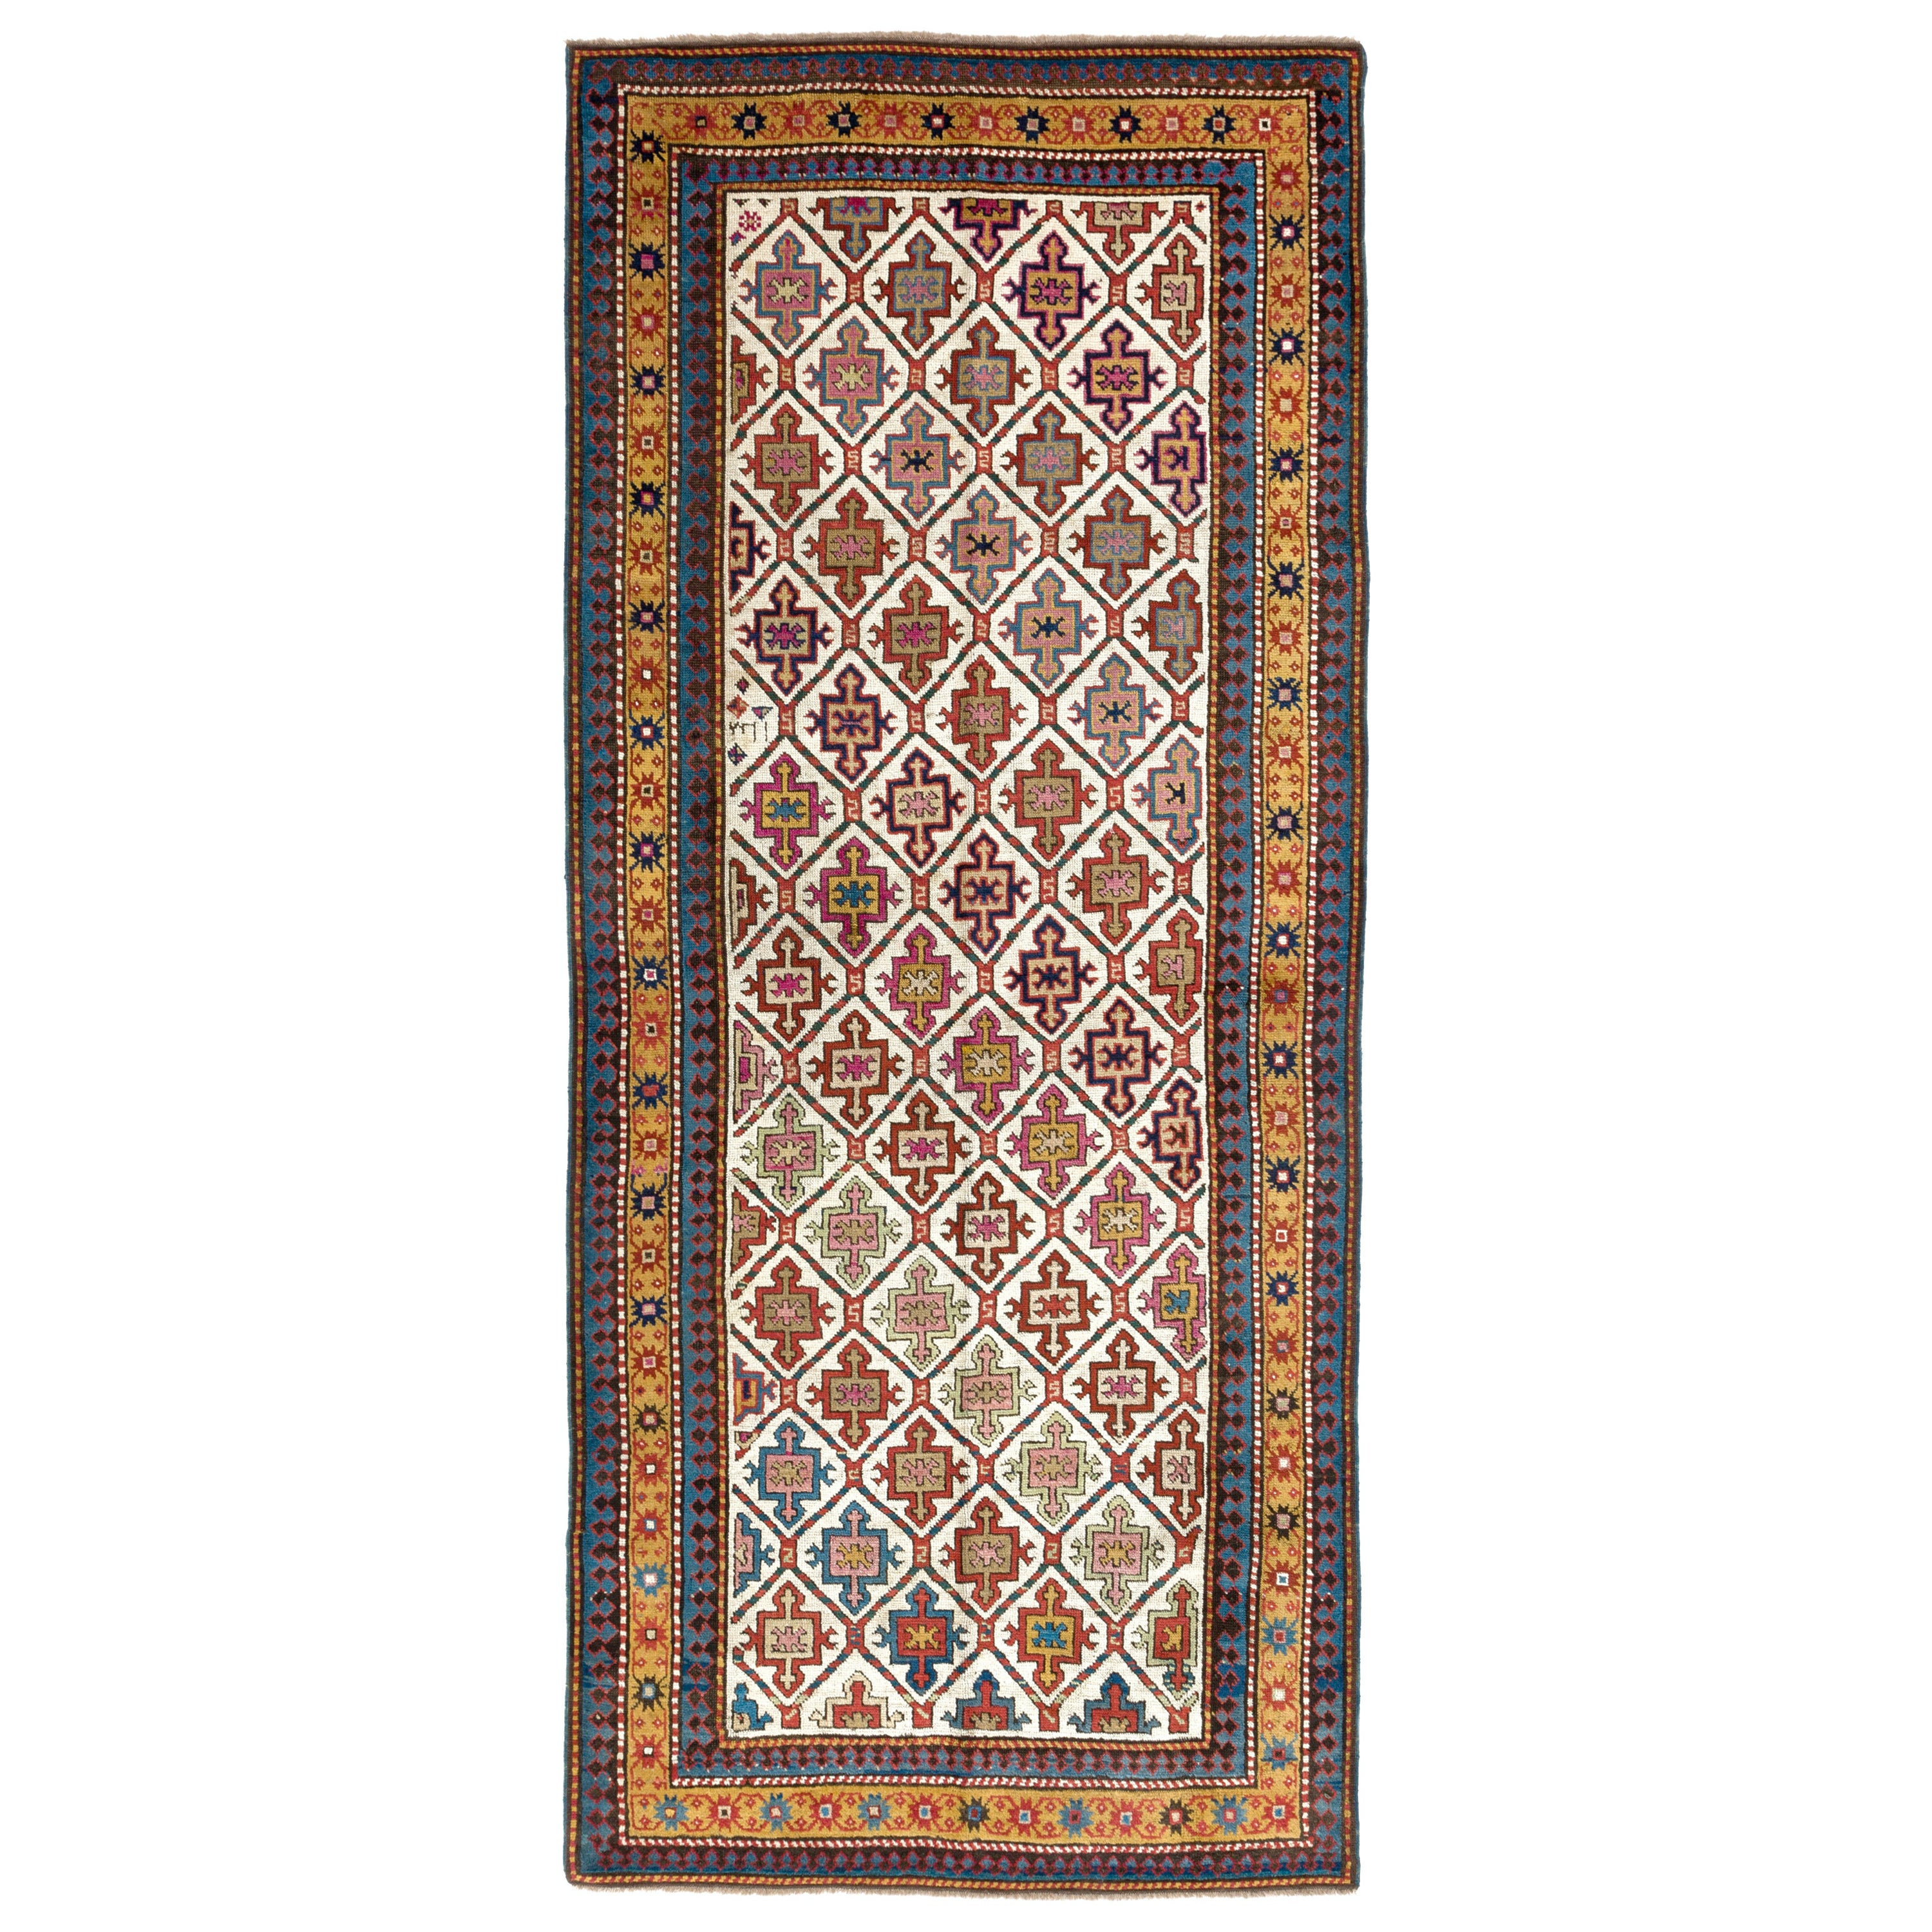 3.6x8.4 ft Seltener antiker kaukasischer Kazak-Teppich aus Karabagh, datiert 1812